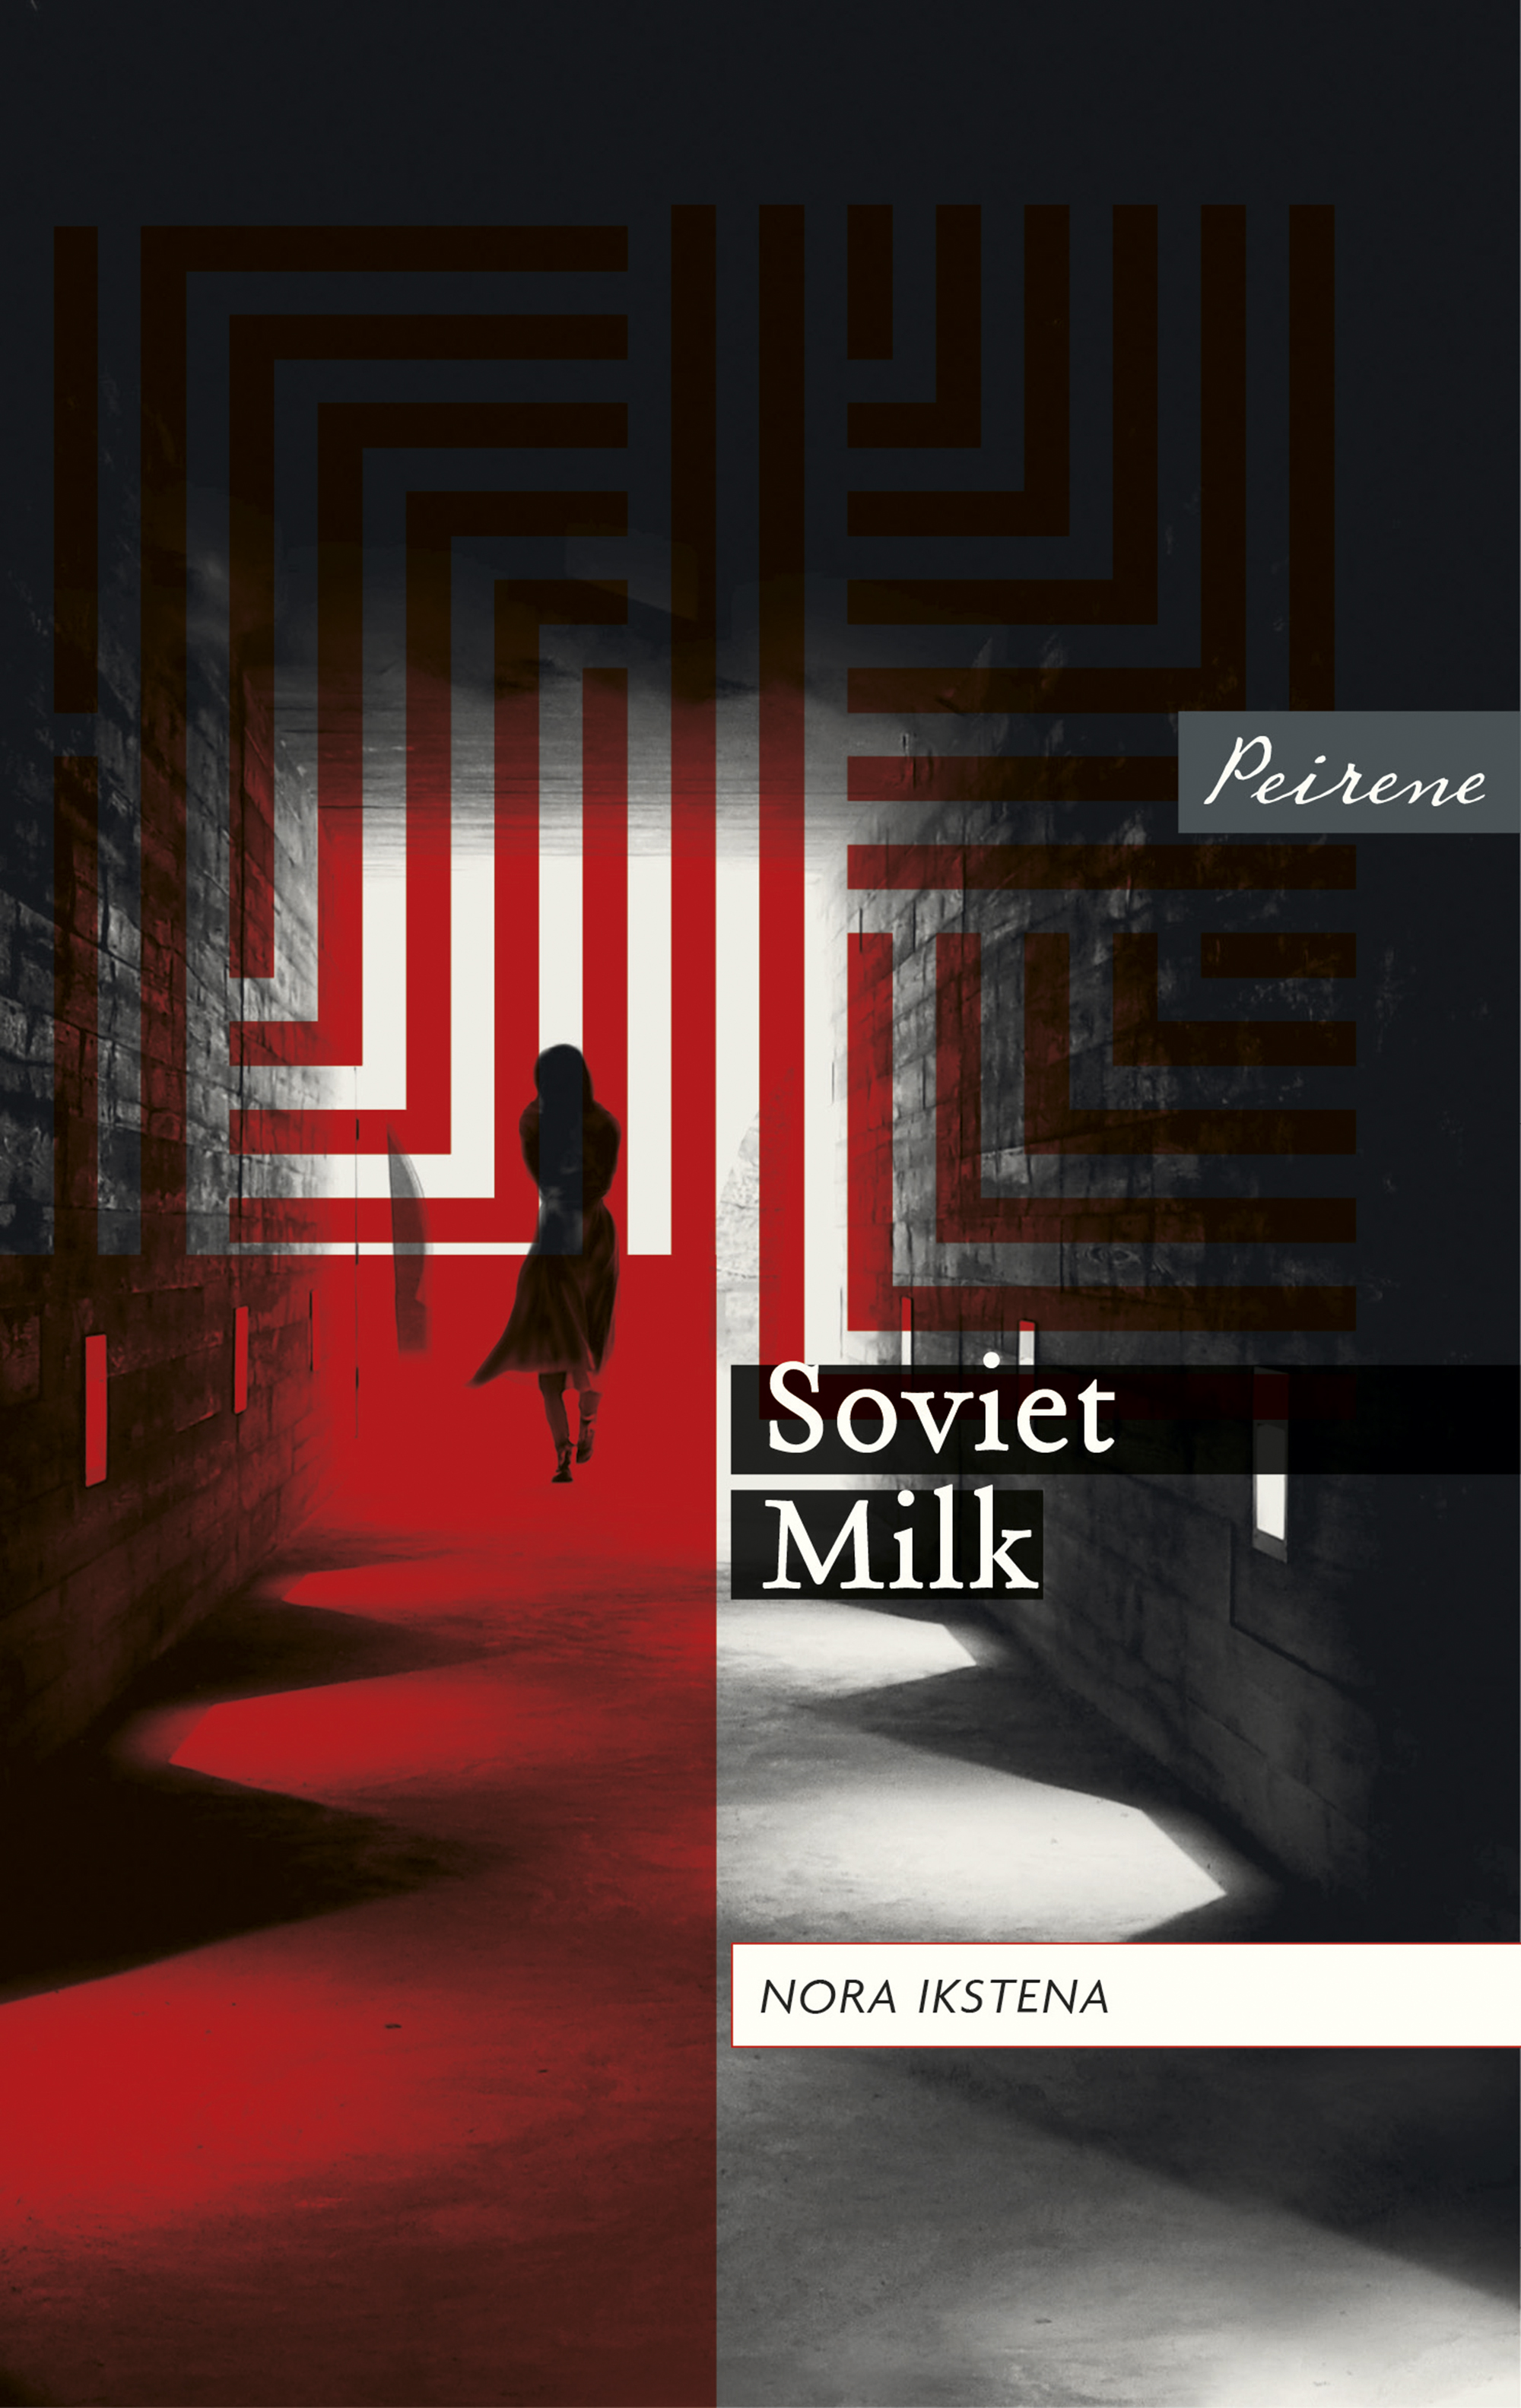 Soviet Milk by Nora Ikstena (tr. Margita Gailitis), Peirene Press